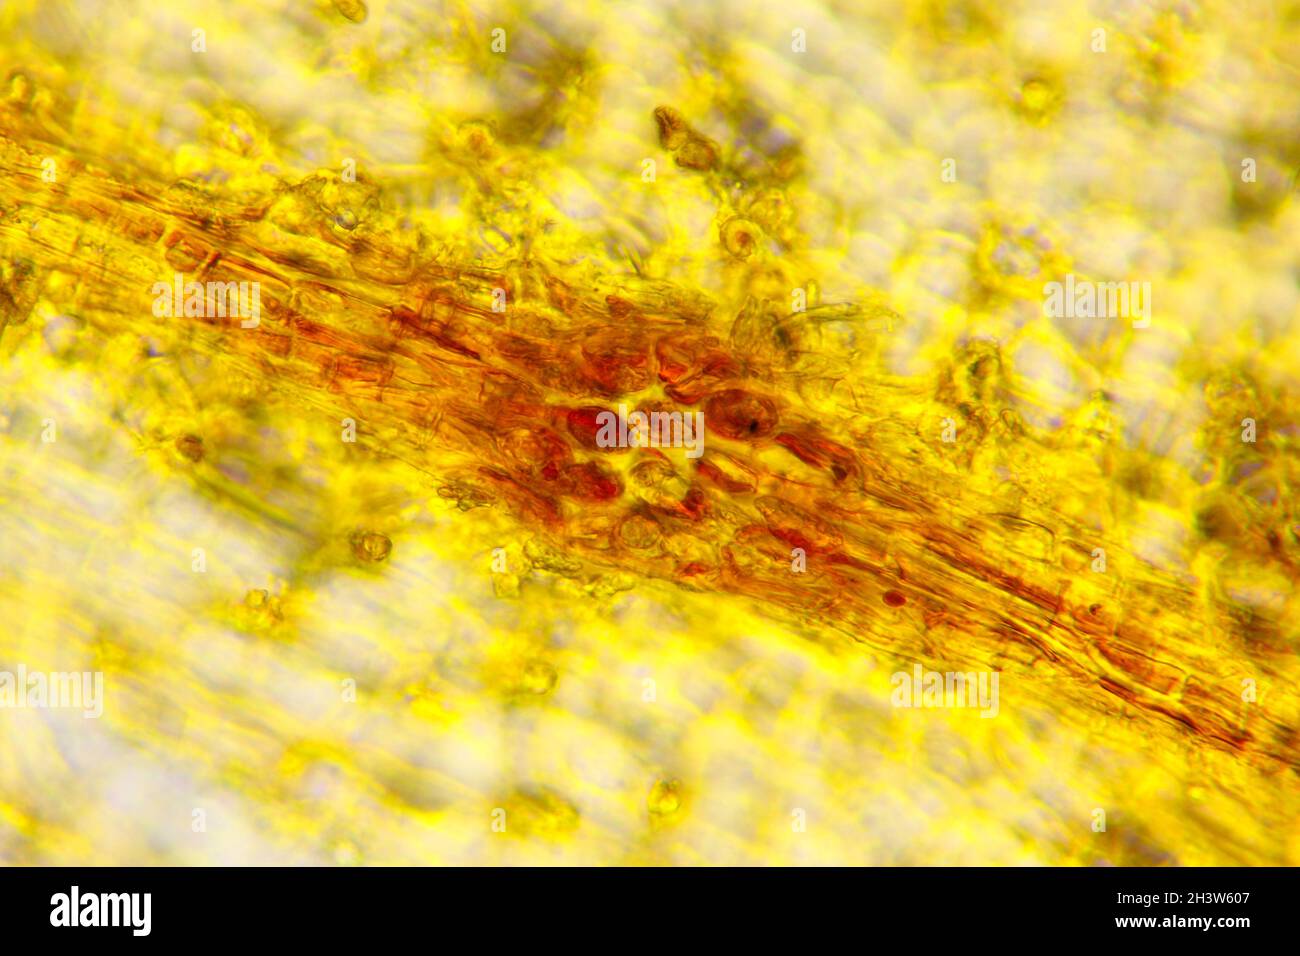 Vue microscopique du zèle commun (Corylus avellana) lenticel (vue de dessus).Lumière transmise.Éclairage à fond clair. Banque D'Images